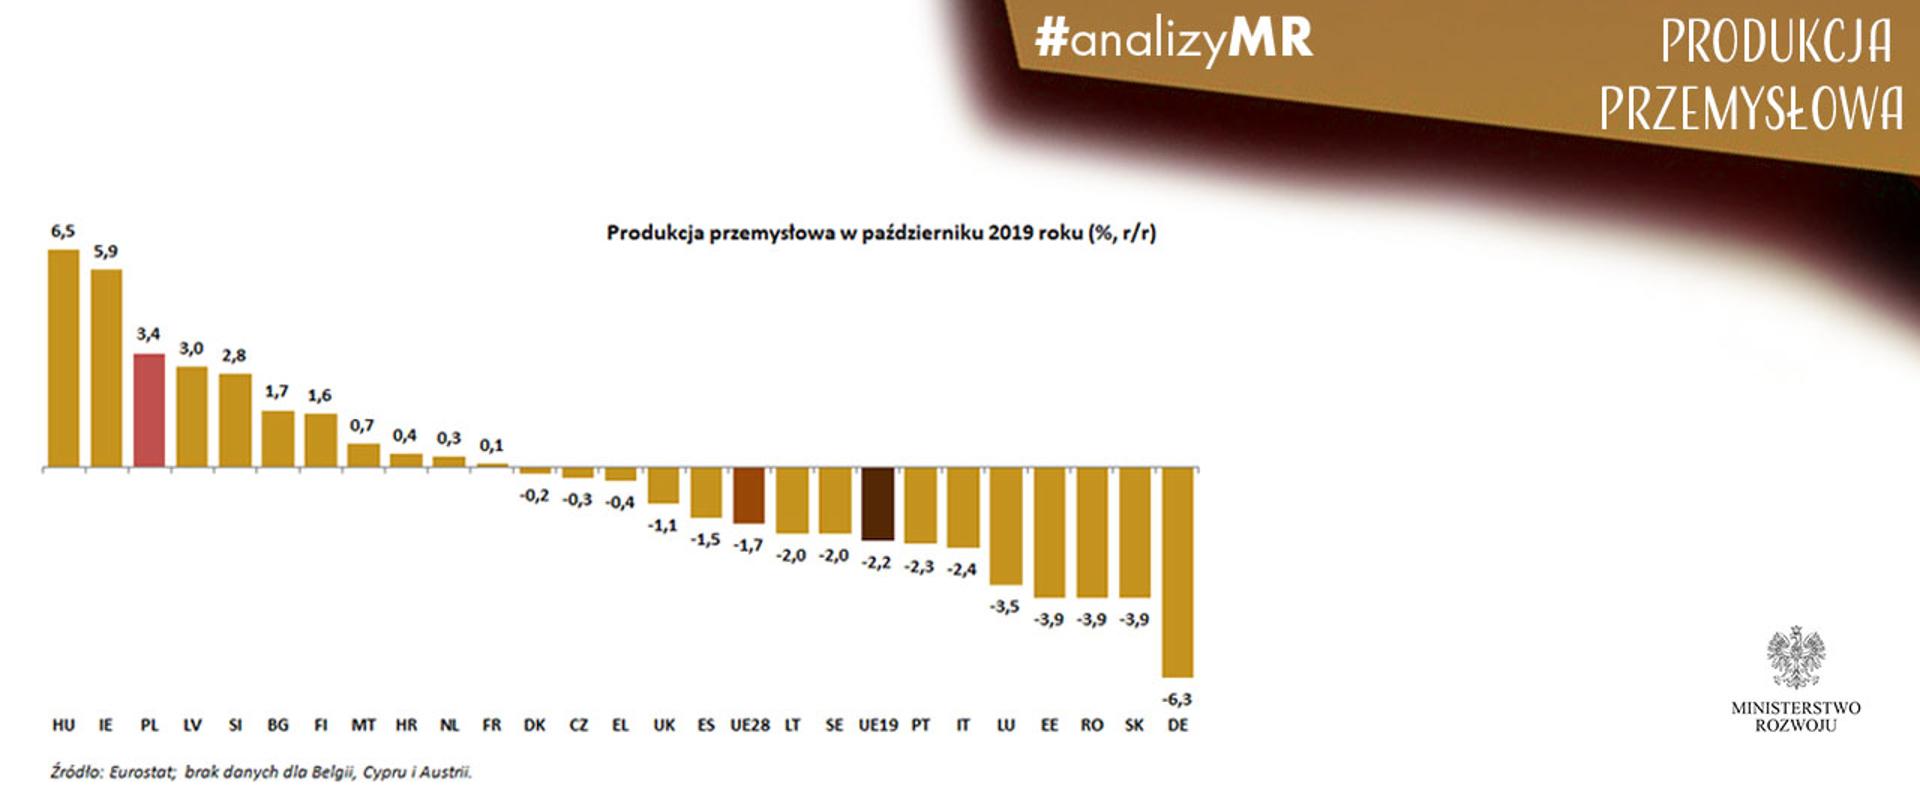 Biało-złota grafika. Po lewej stronie wykres, po prawej logo MR i napisy produkcja przemysłowa, #analizyMR